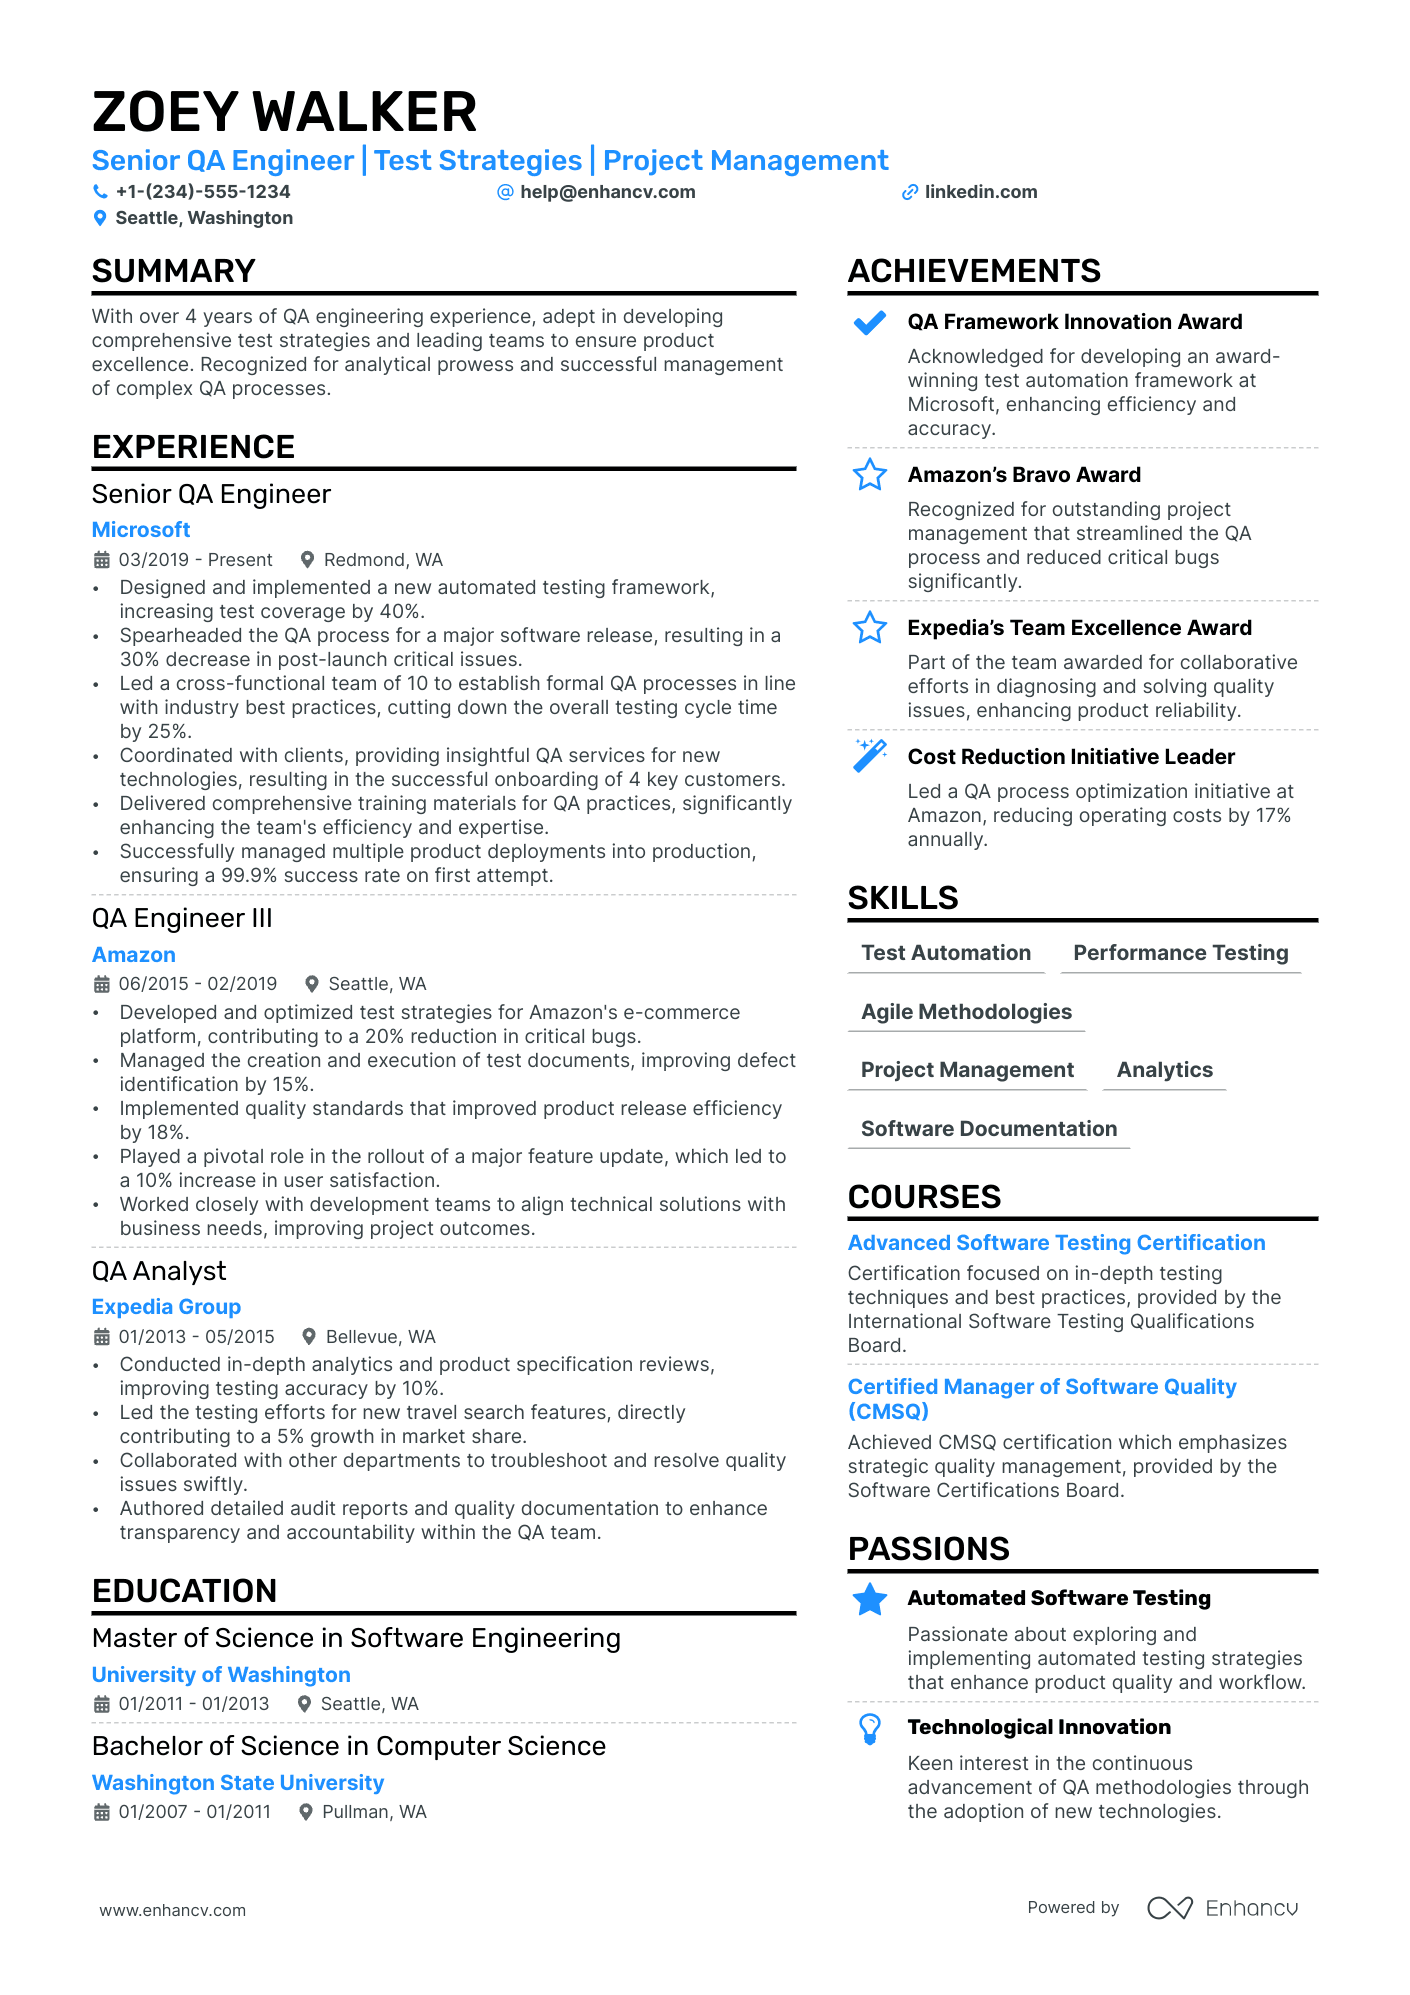 sample resume for qa tester